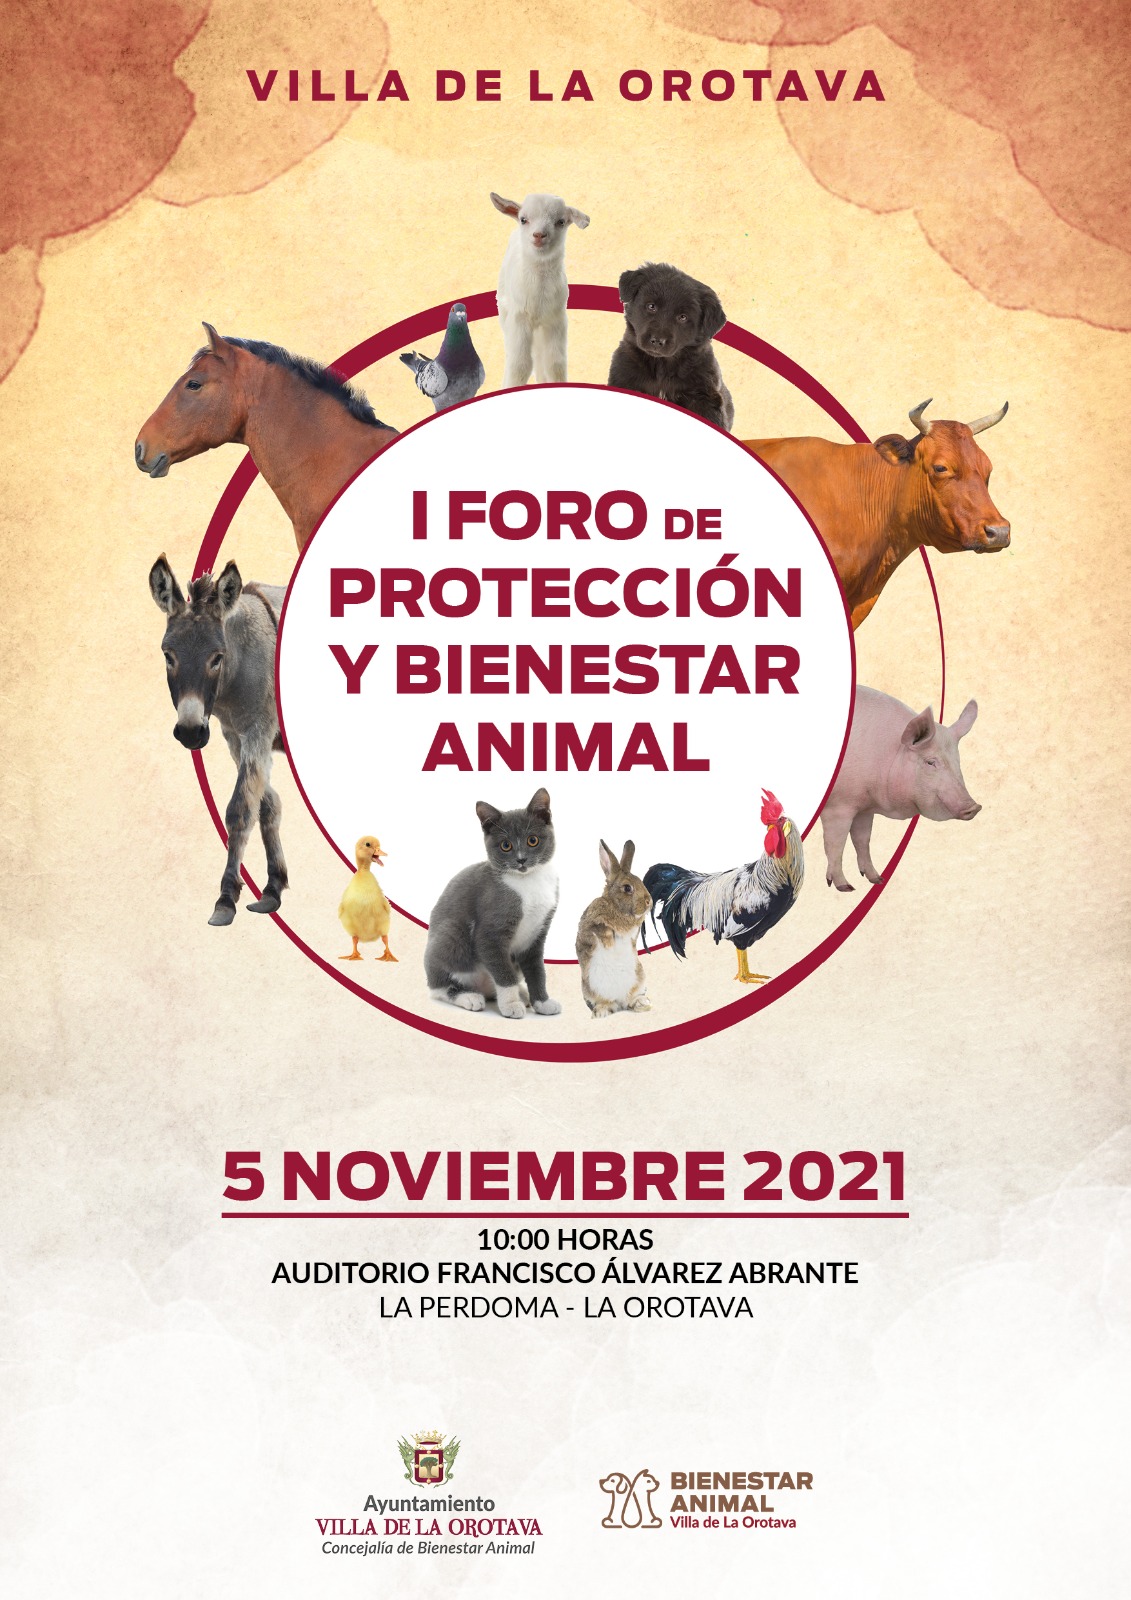 El acto, organizado por la Concejalía de Bienestar Animal, tendrá lugar este viernes 5 de noviembre, a partir de las 10:00 horas, en La Perdoma